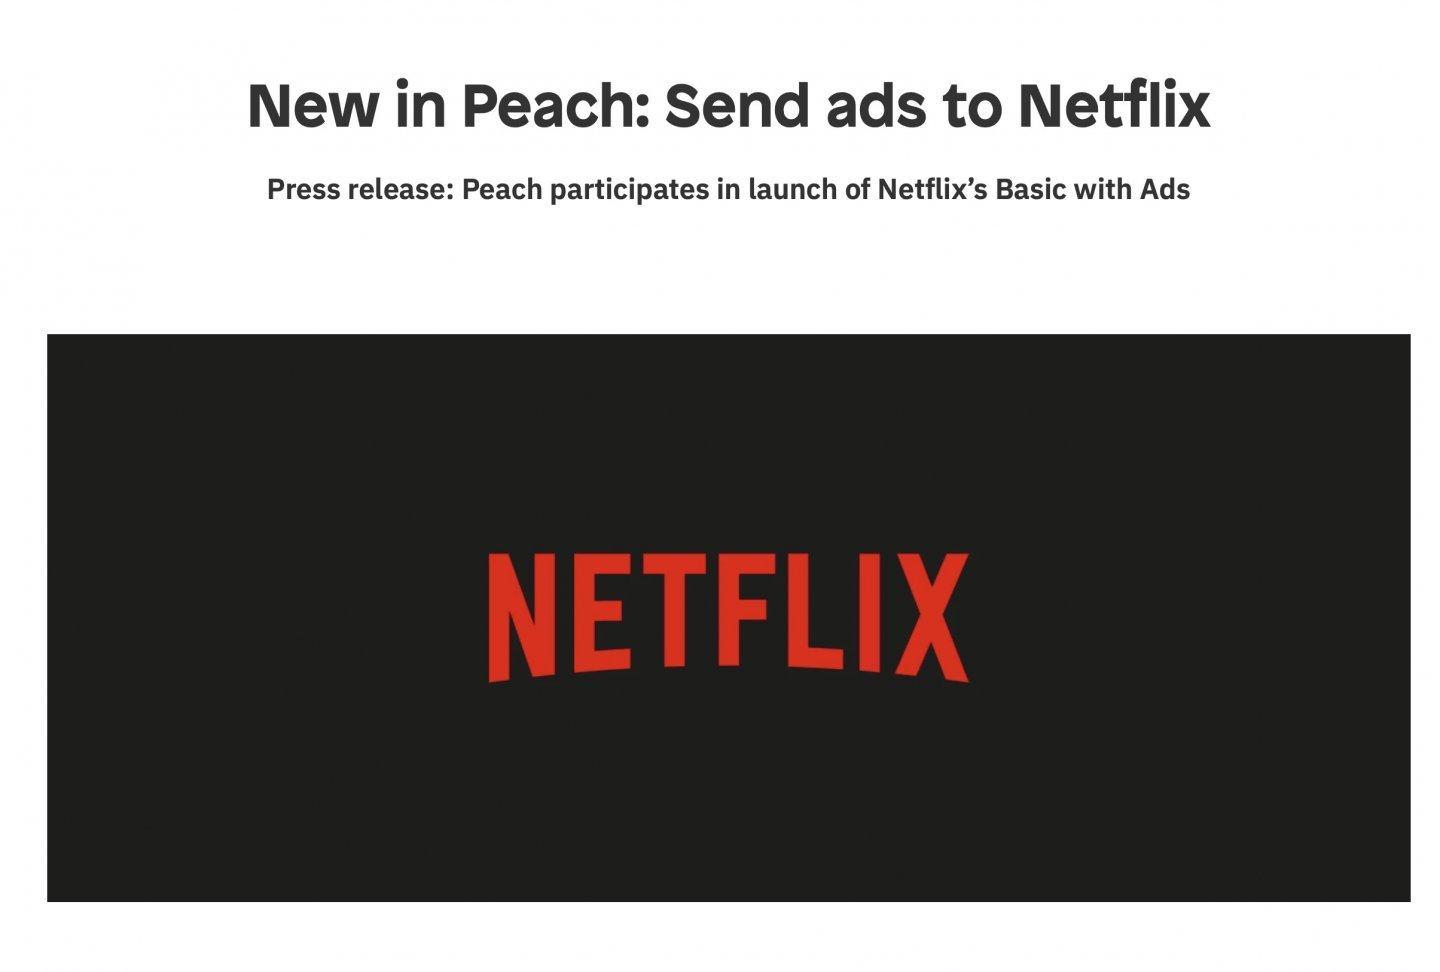 影片廣告管理平台 Peach 公佈提供投放 Netflix 電視廣告服務